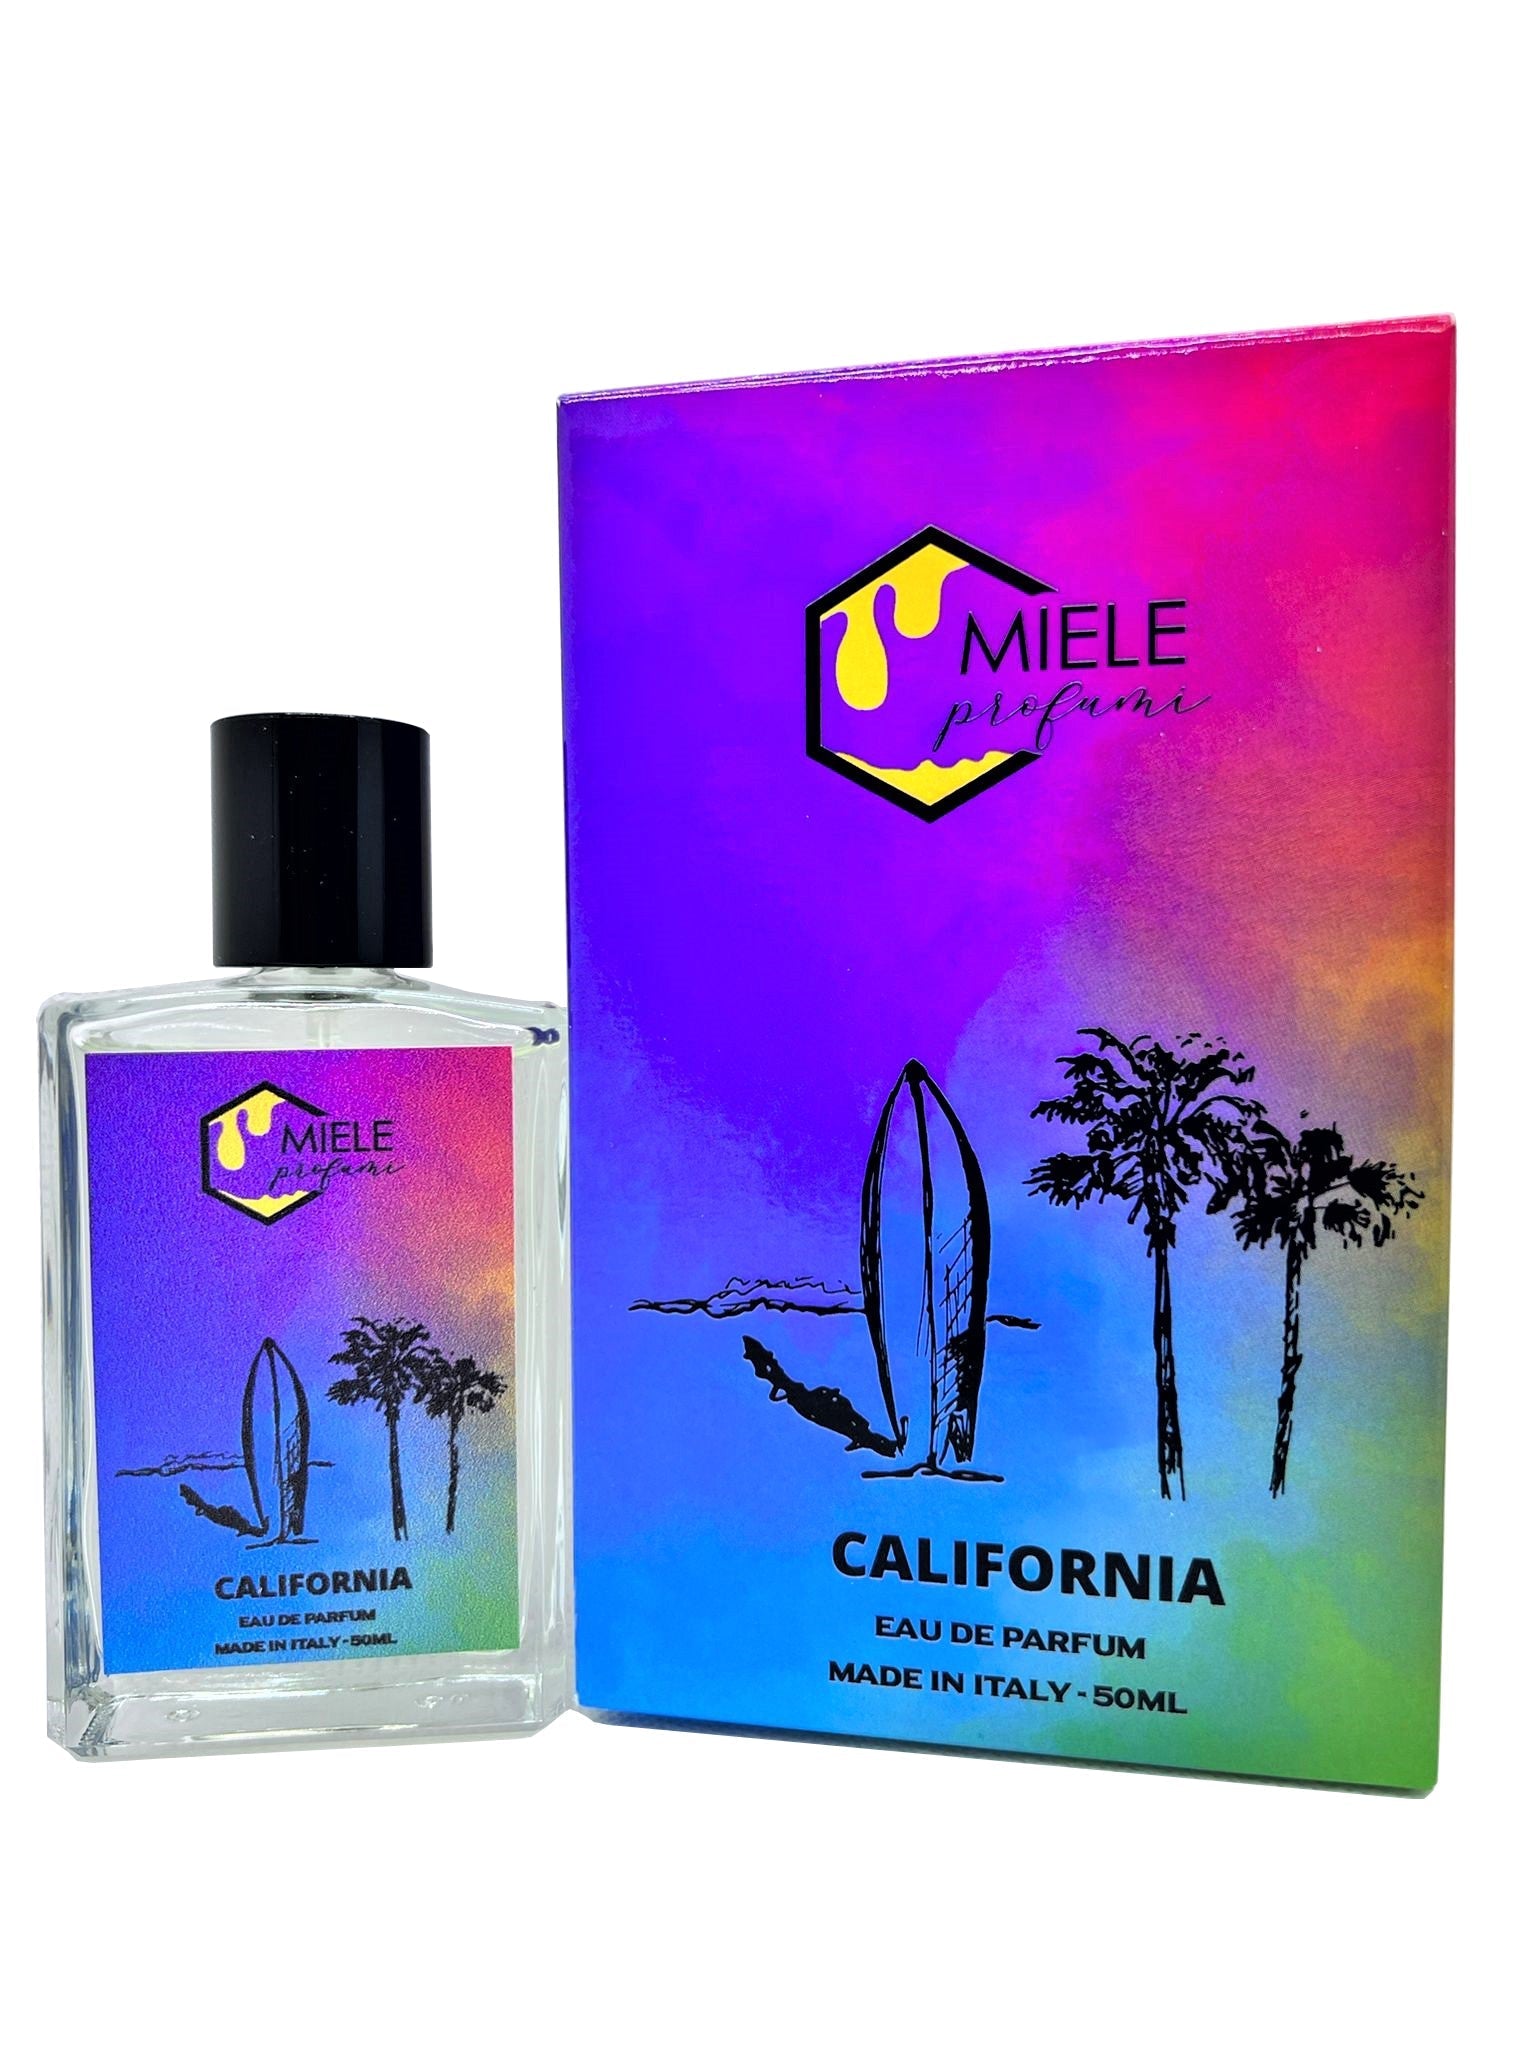 California miele profumi profumo ispirato equivalente a one million  alta persistenza scia fragranza  unisex Made in Italy